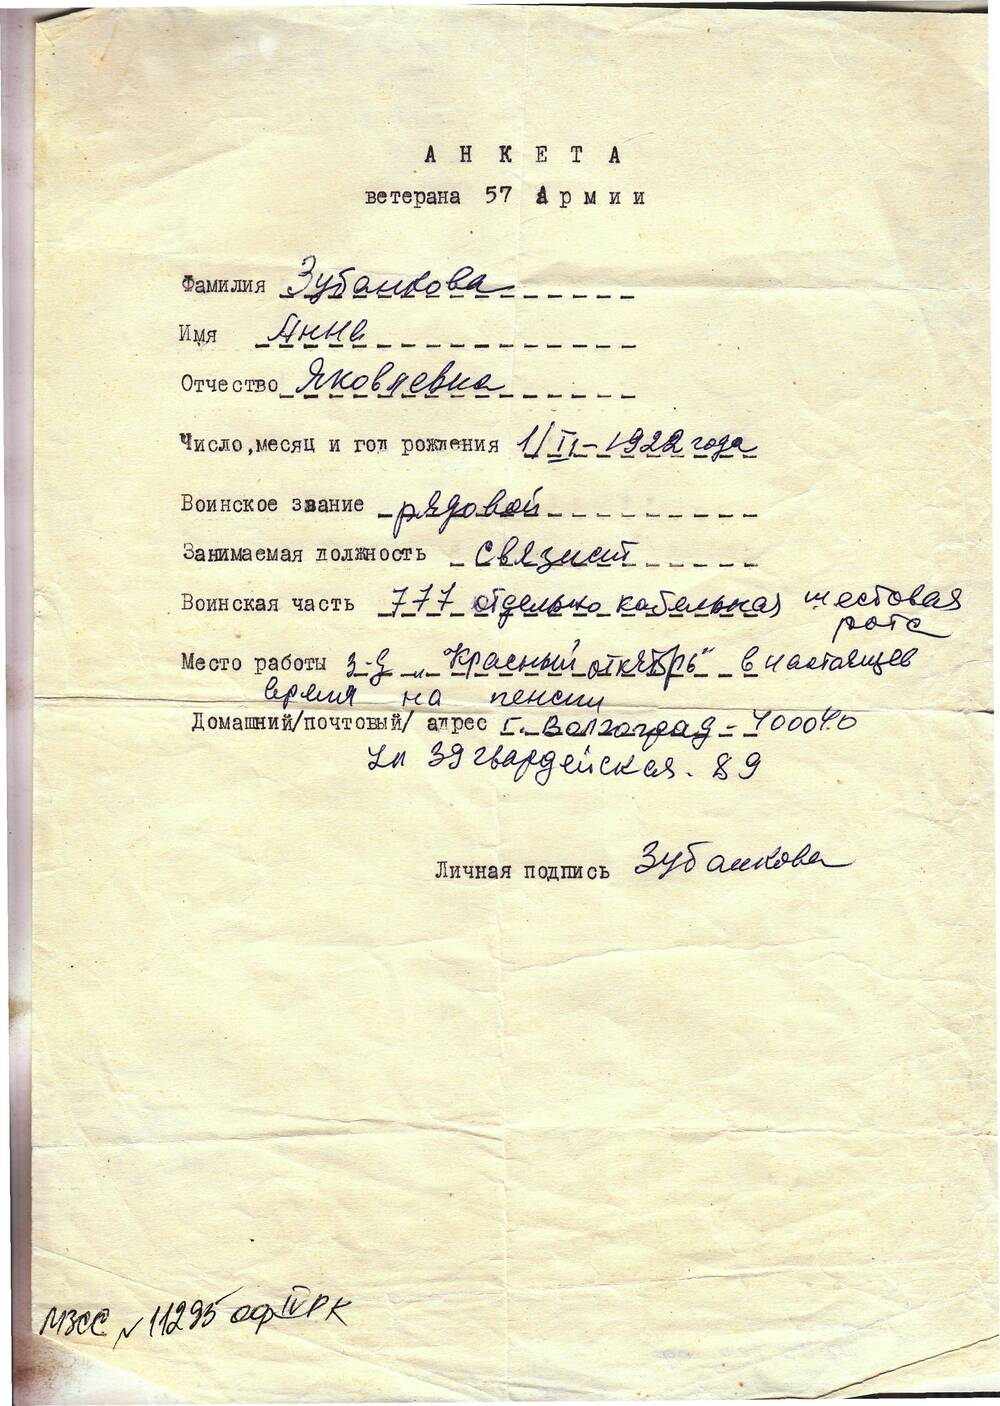 Анкета ветерана 57 армии Зубанкова анна Яковлевна. 1 лист рукопись на бланке, бланк напечатан на машинке.